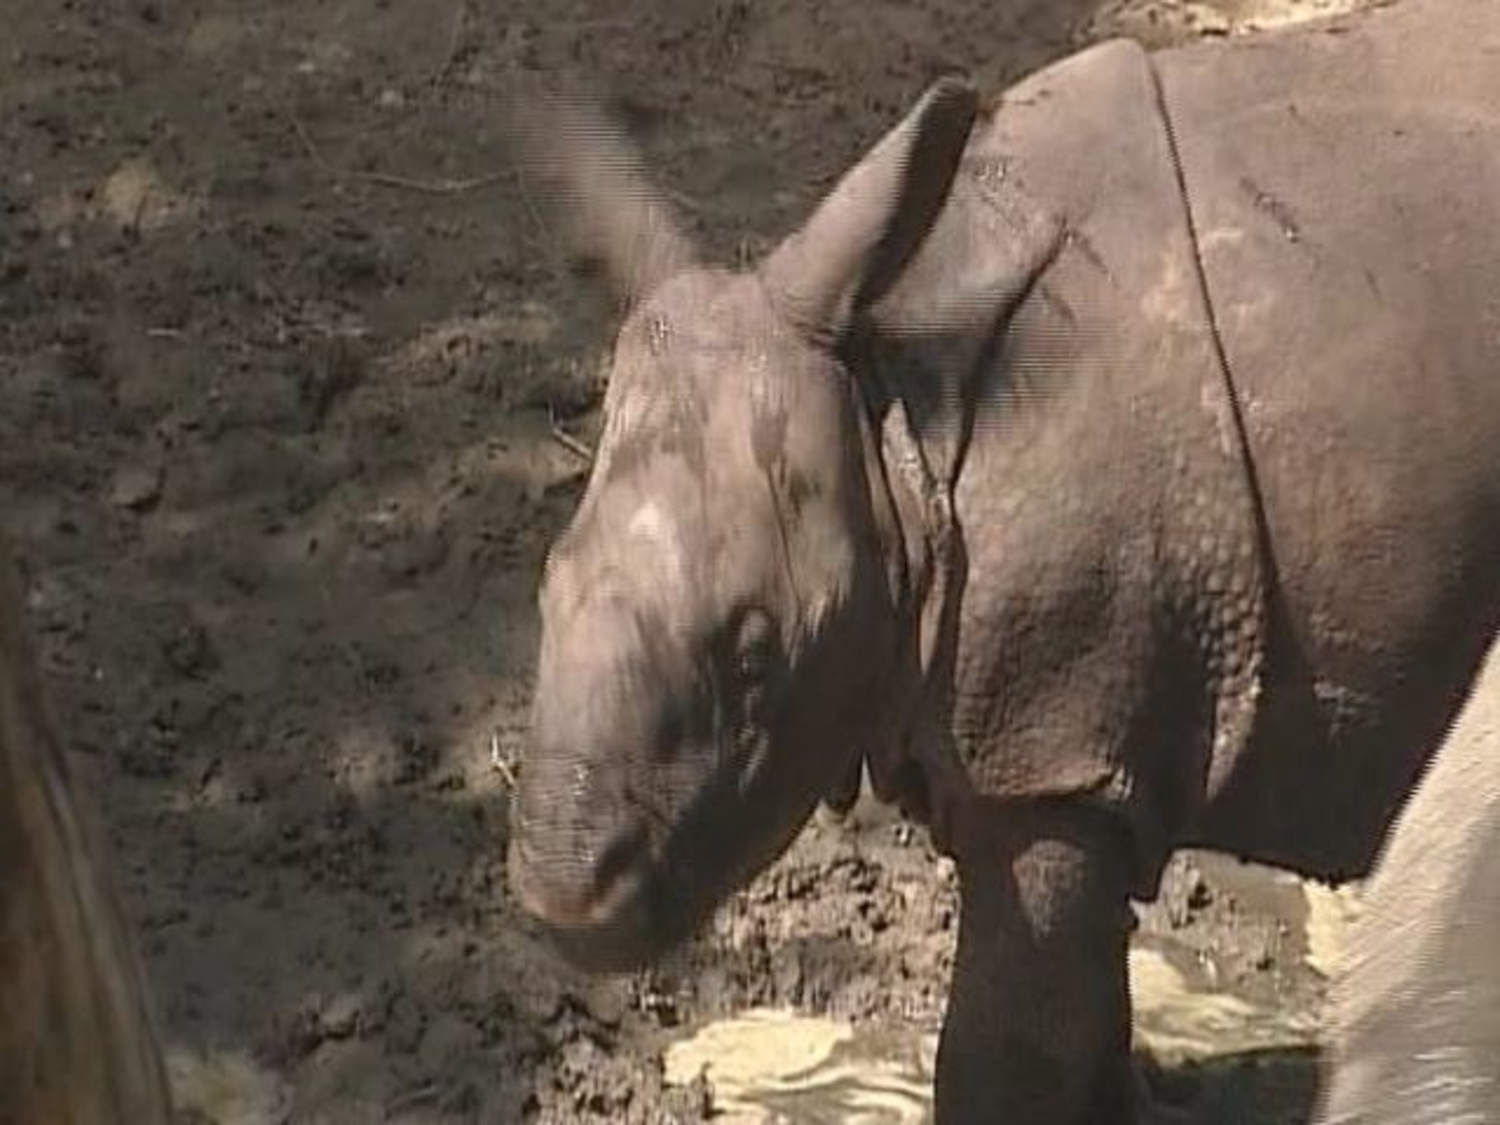 Rare baby rhino makes debut at Fla. zoo